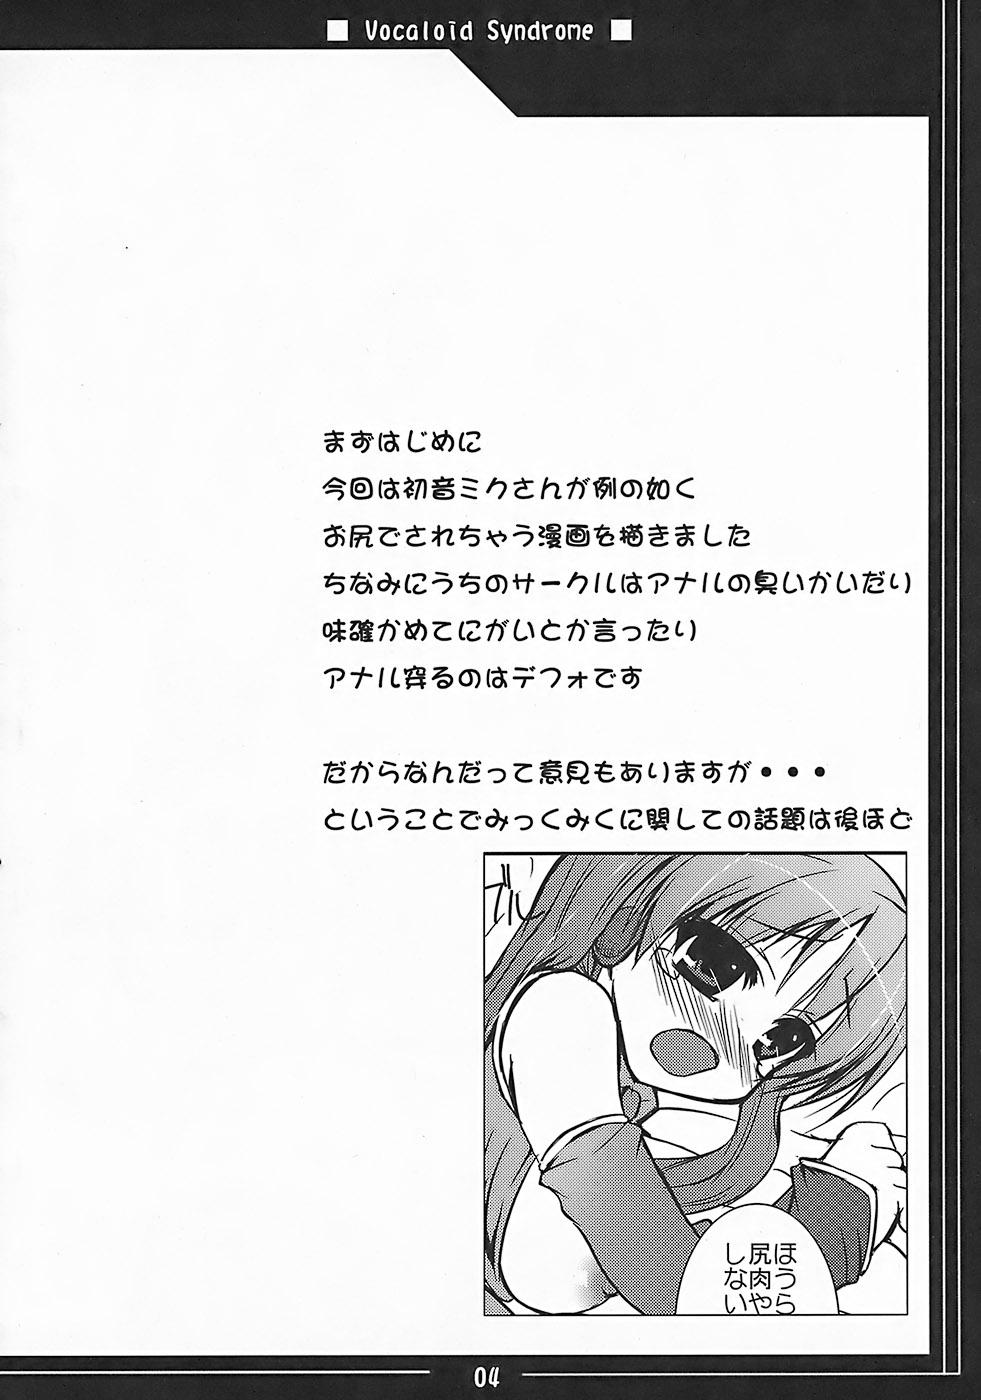 19yo Vocaloid Shoukougun - Vocaloid Eating Pussy - Page 3